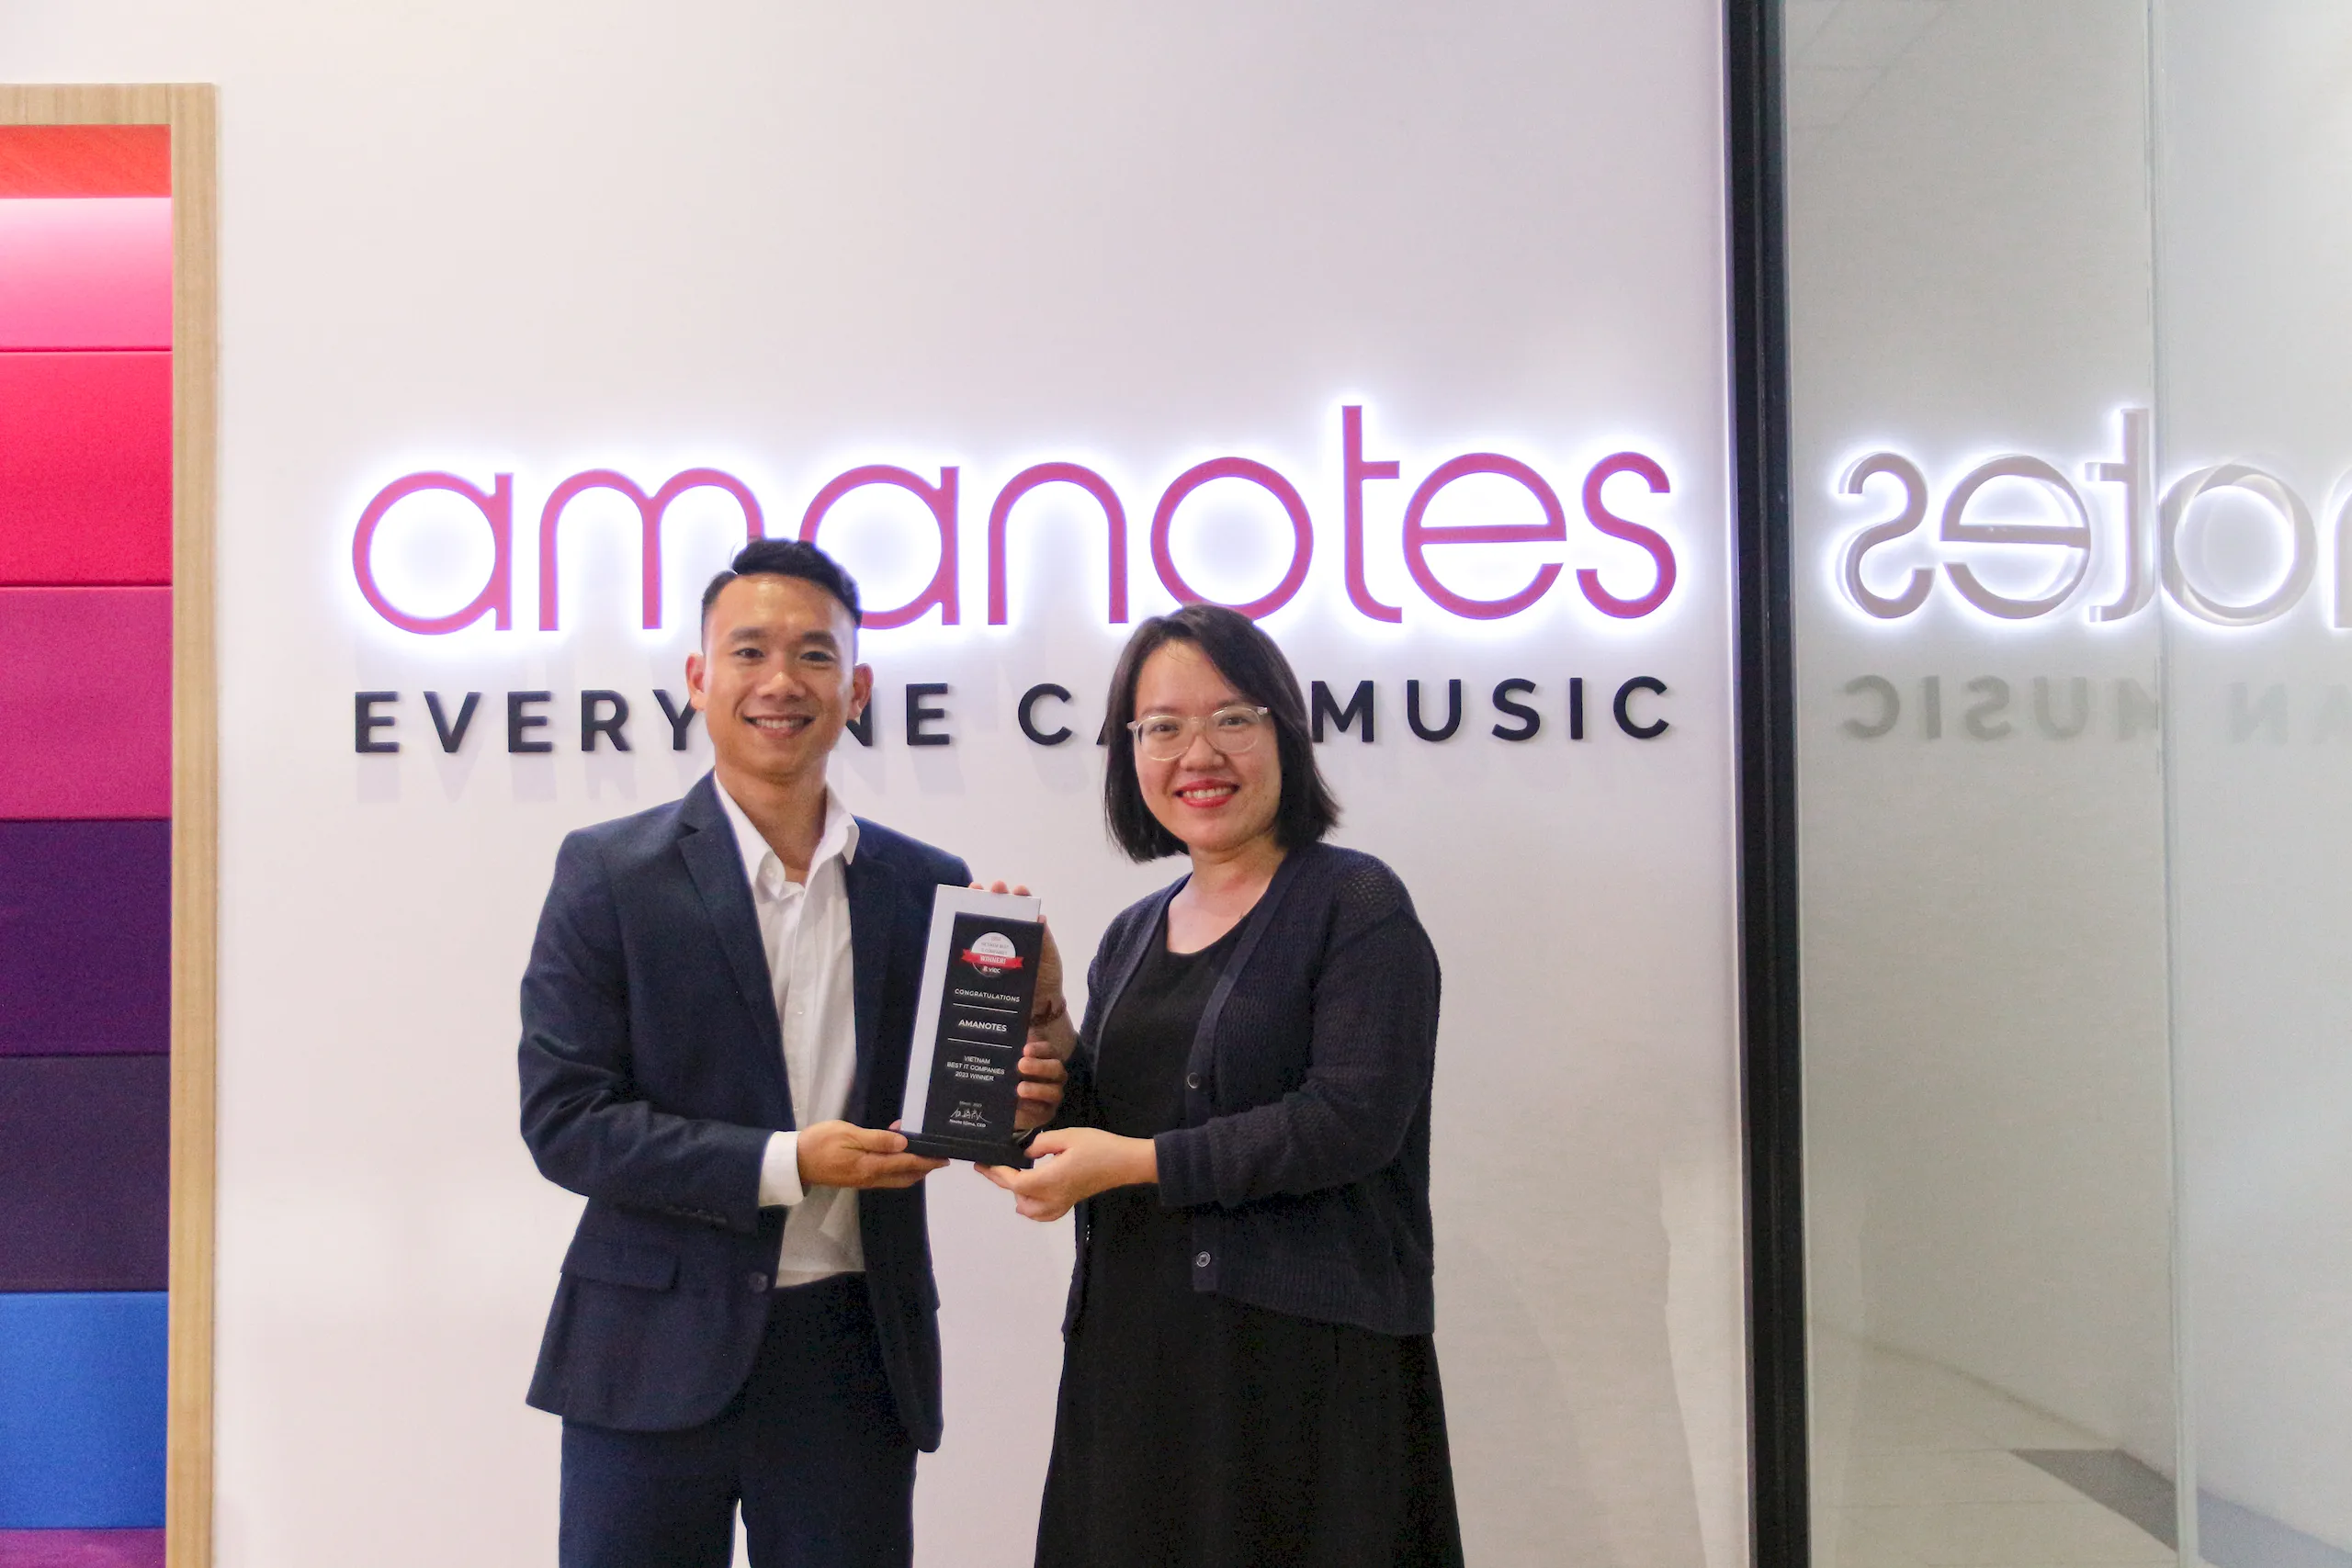 Amanotes đạt giải “Công ty IT tốt nhất Việt Nam” 2 năm liên tiếp